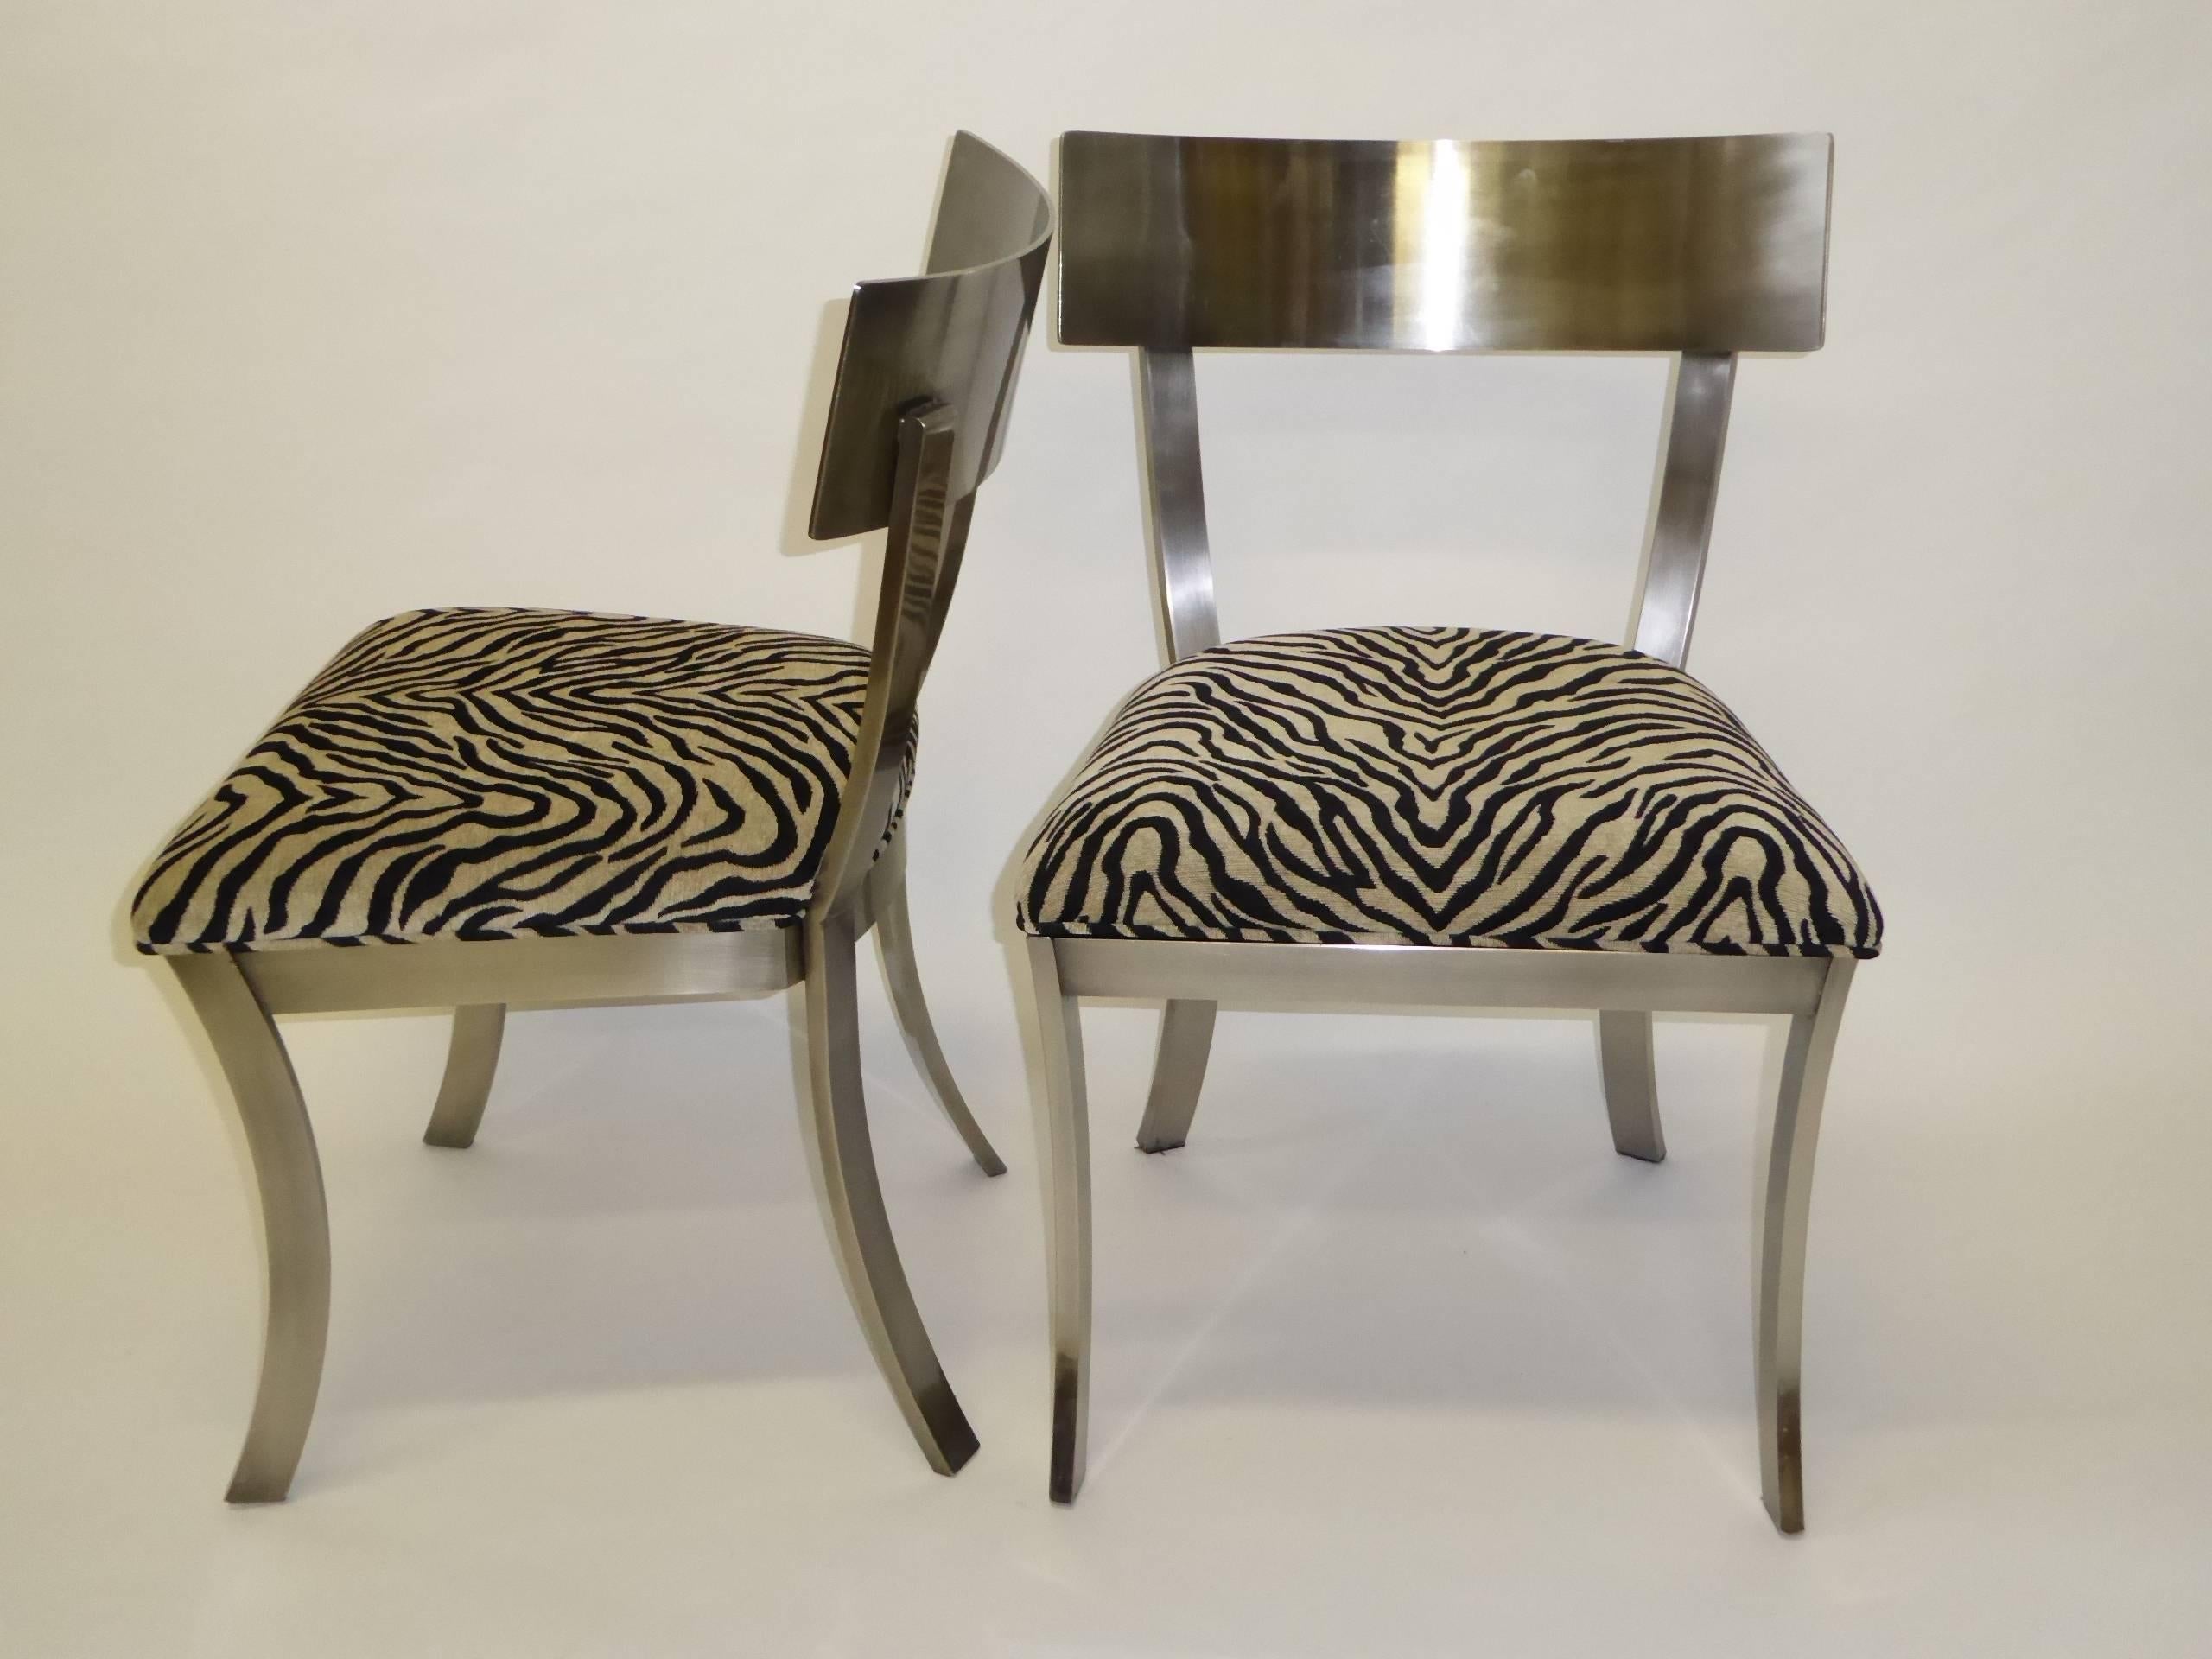 American Sleek DIA Steel Klismos Chairs Design Institute of America